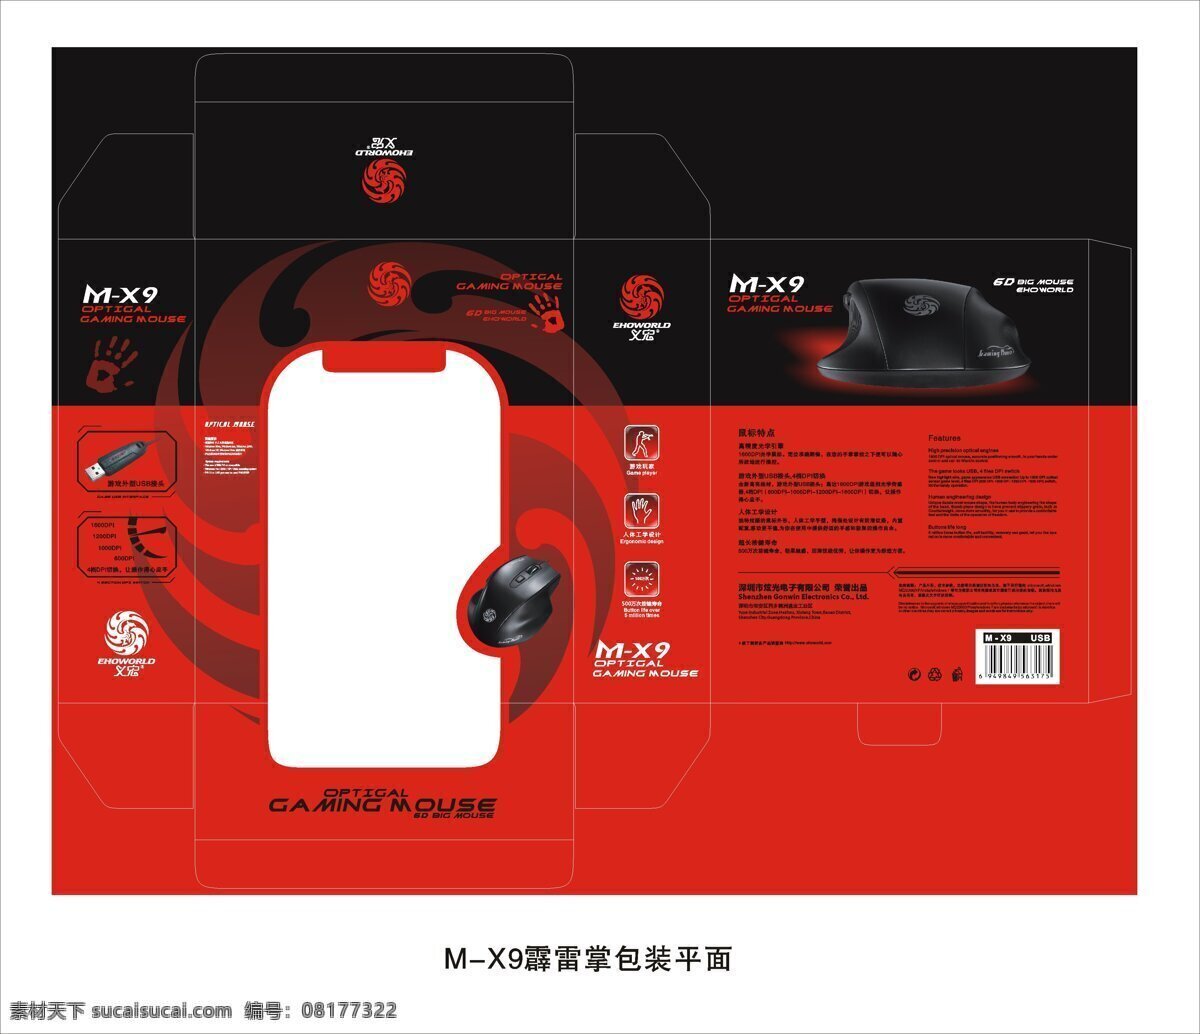 包装 包装设计 黑色 平面设计 鼠标 游戏 矢量 模板下载 鼠标包装设计 鼠标包装盒 鼠标彩盒 psd源文件